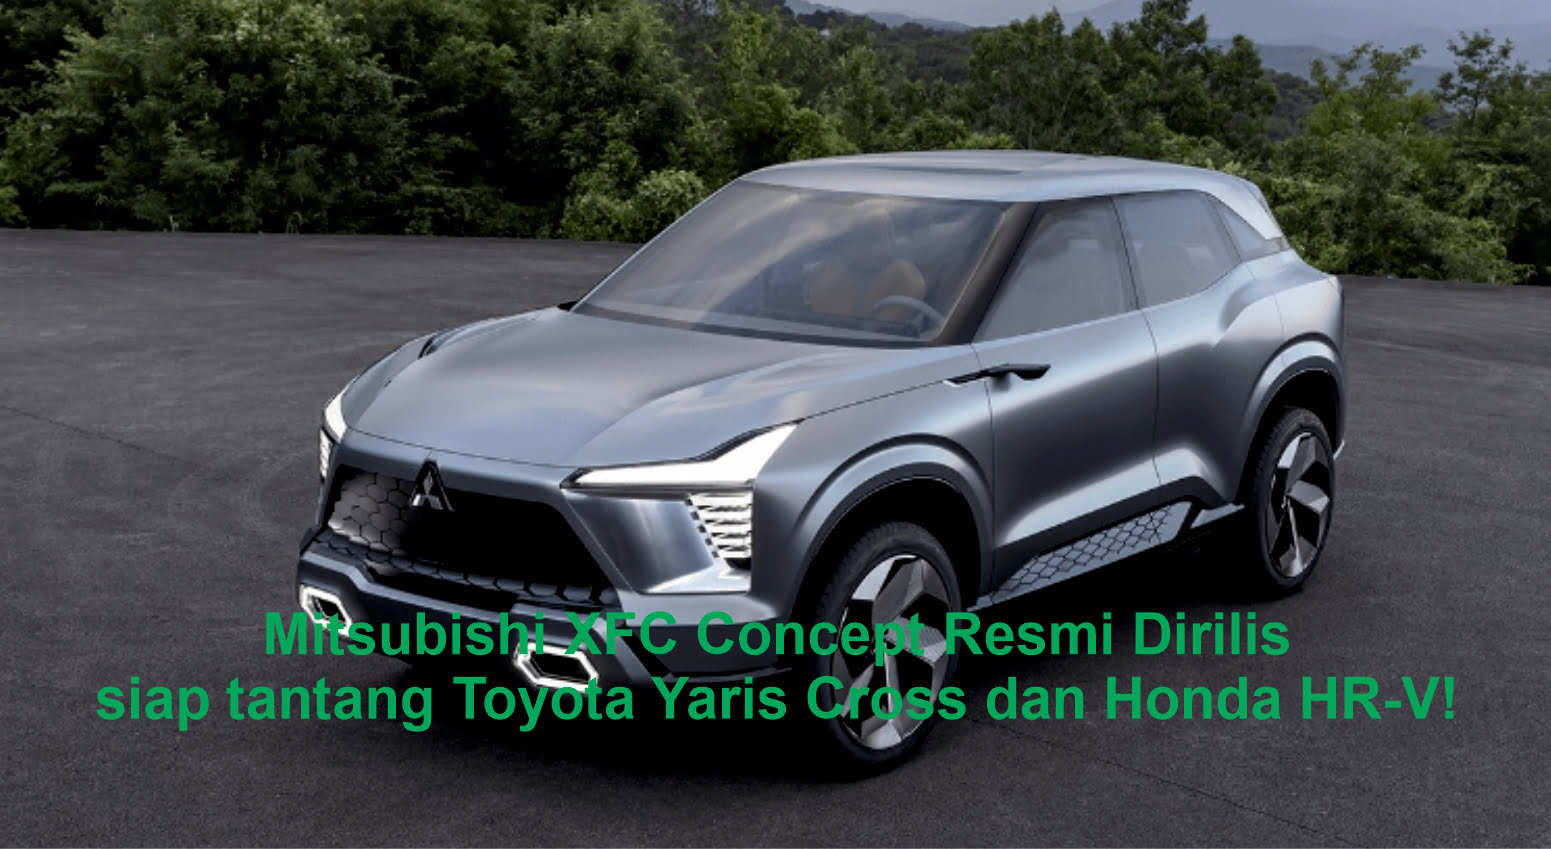 Mitsubishi XFC Concept Resmi Dirilis Menantang Dominasi Compact SUV!, siap tantang Toyota Yaris Cross dan Honda HR-V!